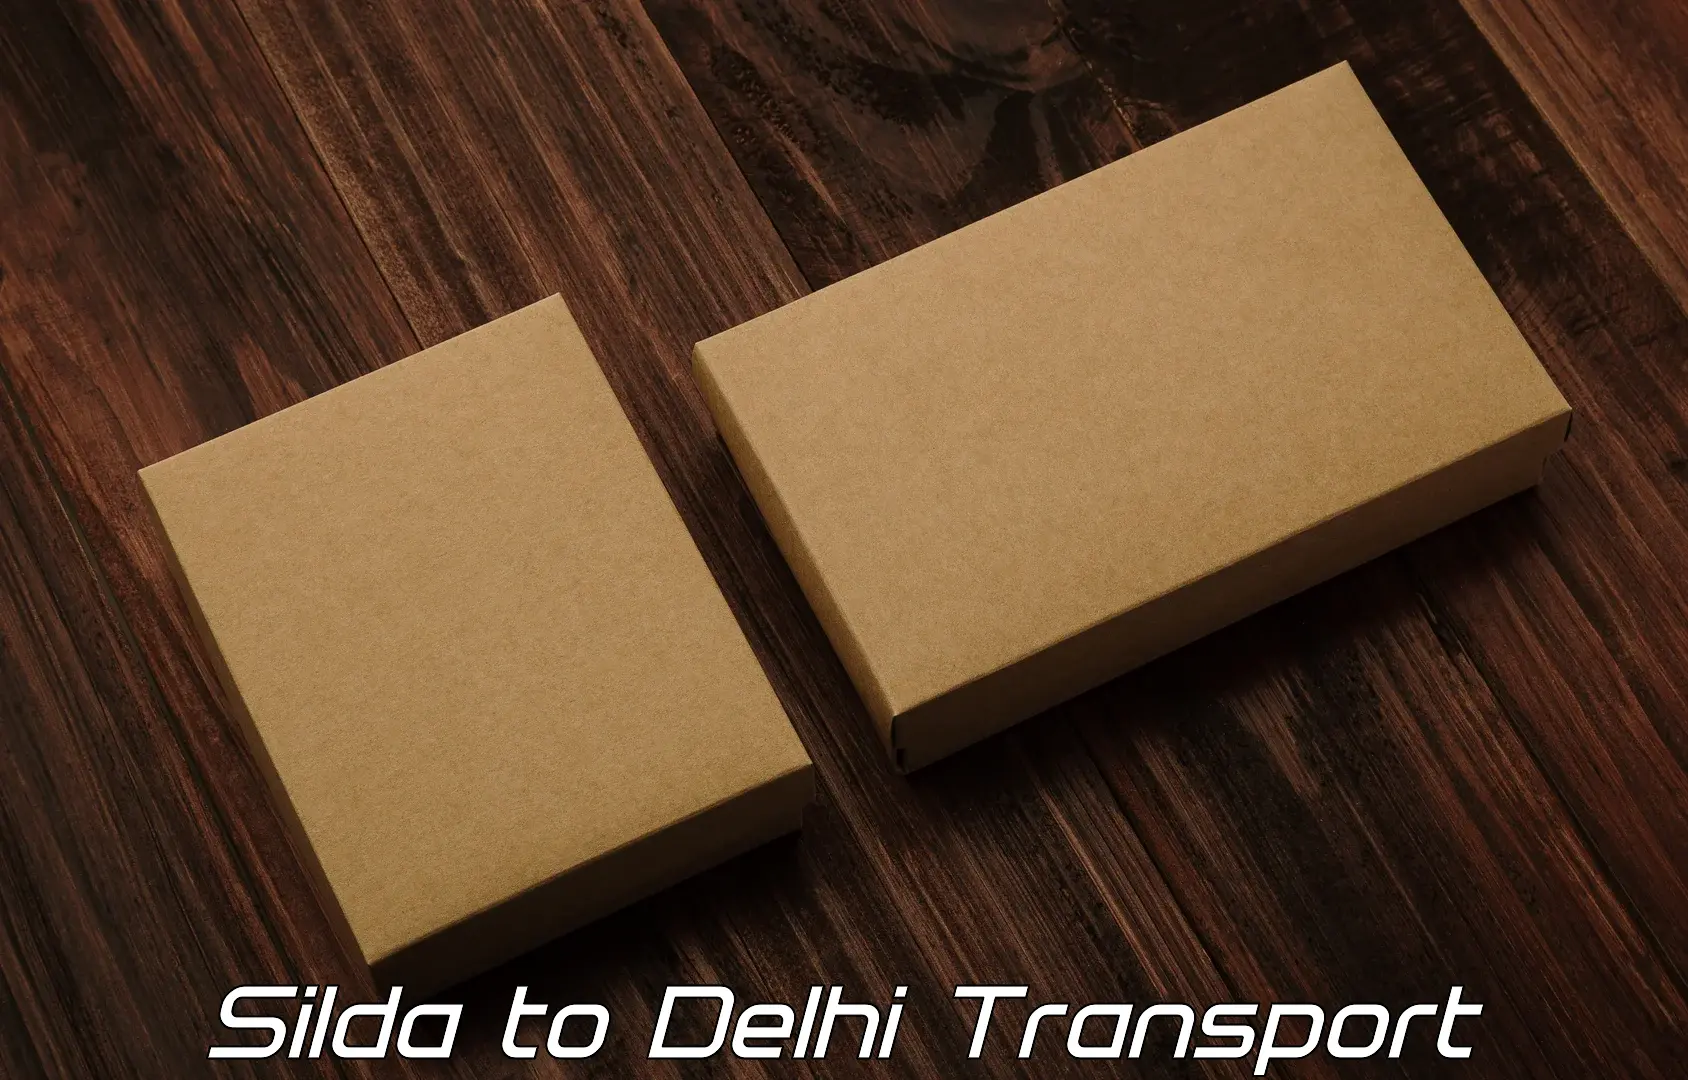 Air freight transport services Silda to Jamia Millia Islamia New Delhi